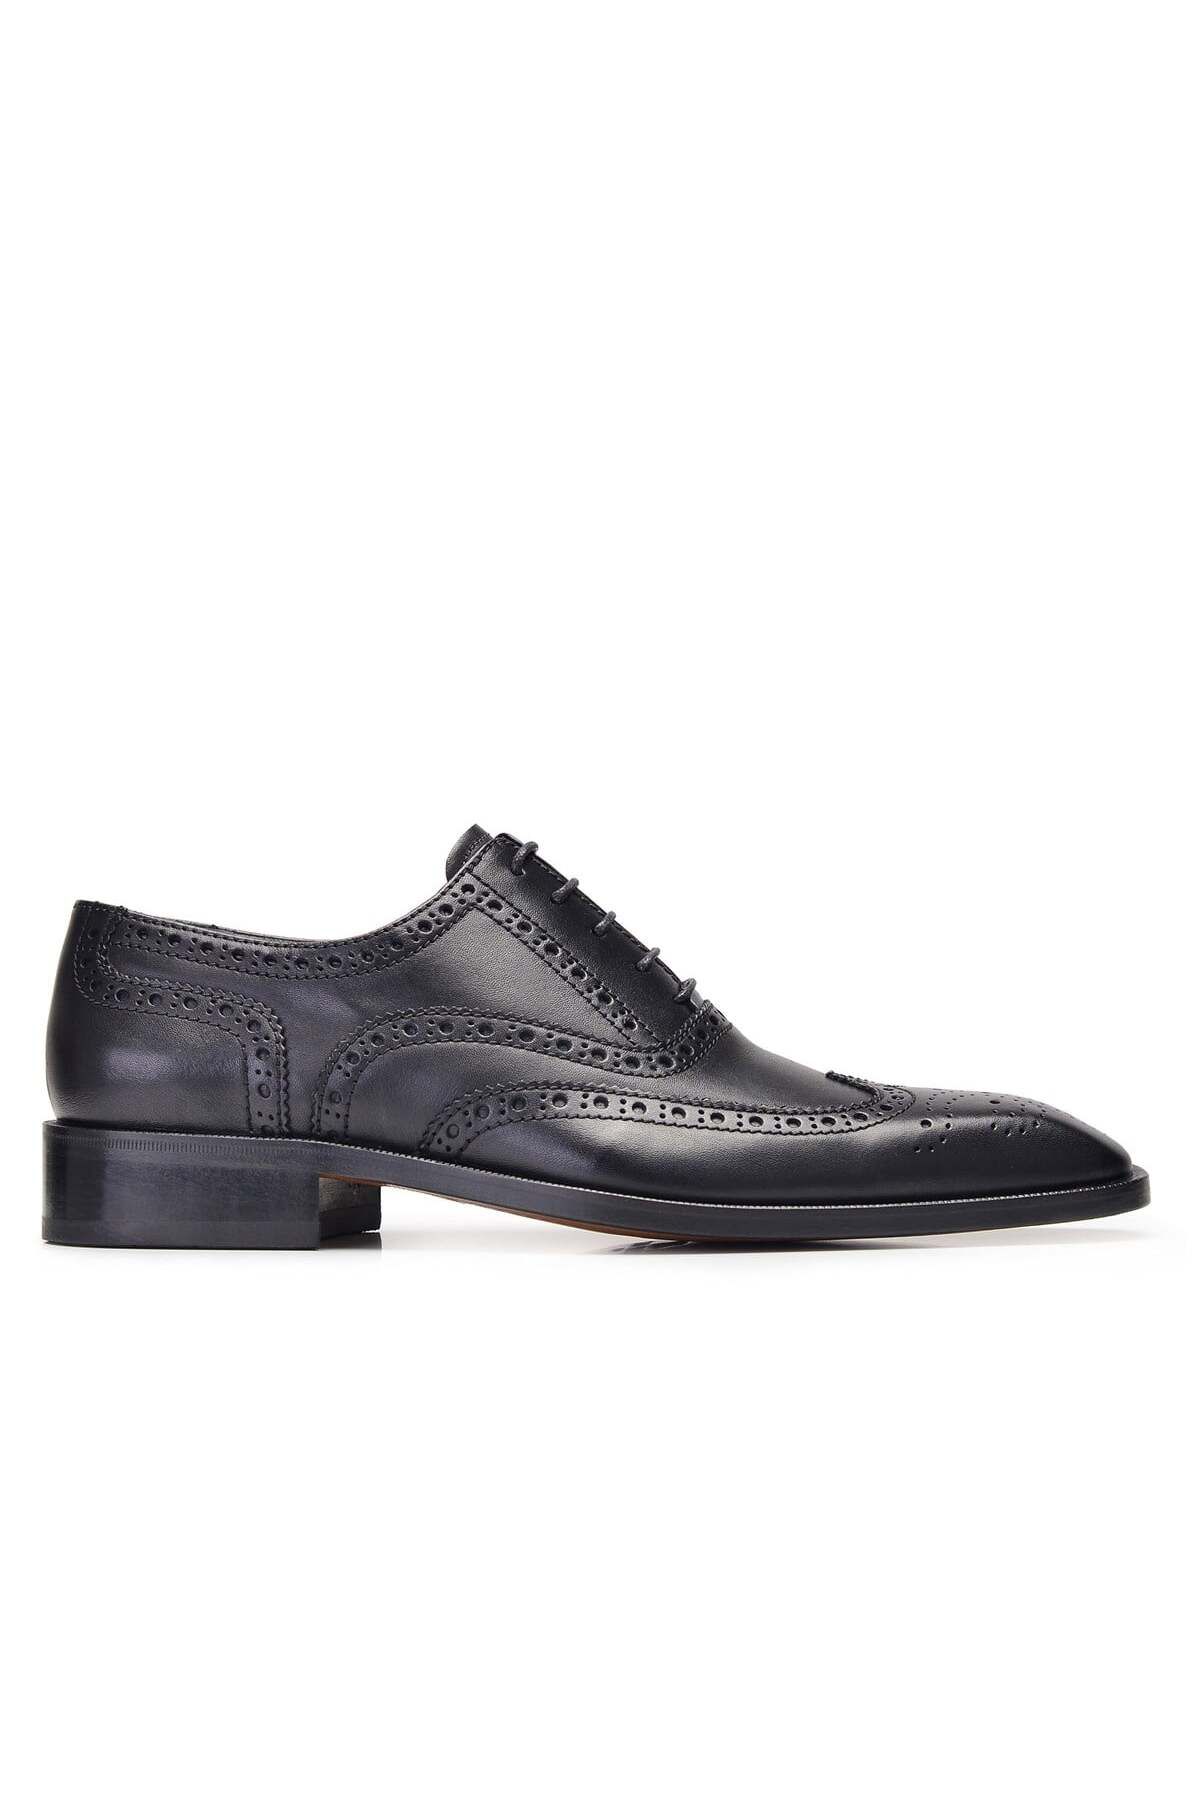 Nevzat Onay Siyah Klasik Bağcıklı Kösele Erkek Ayakkabı -9002-